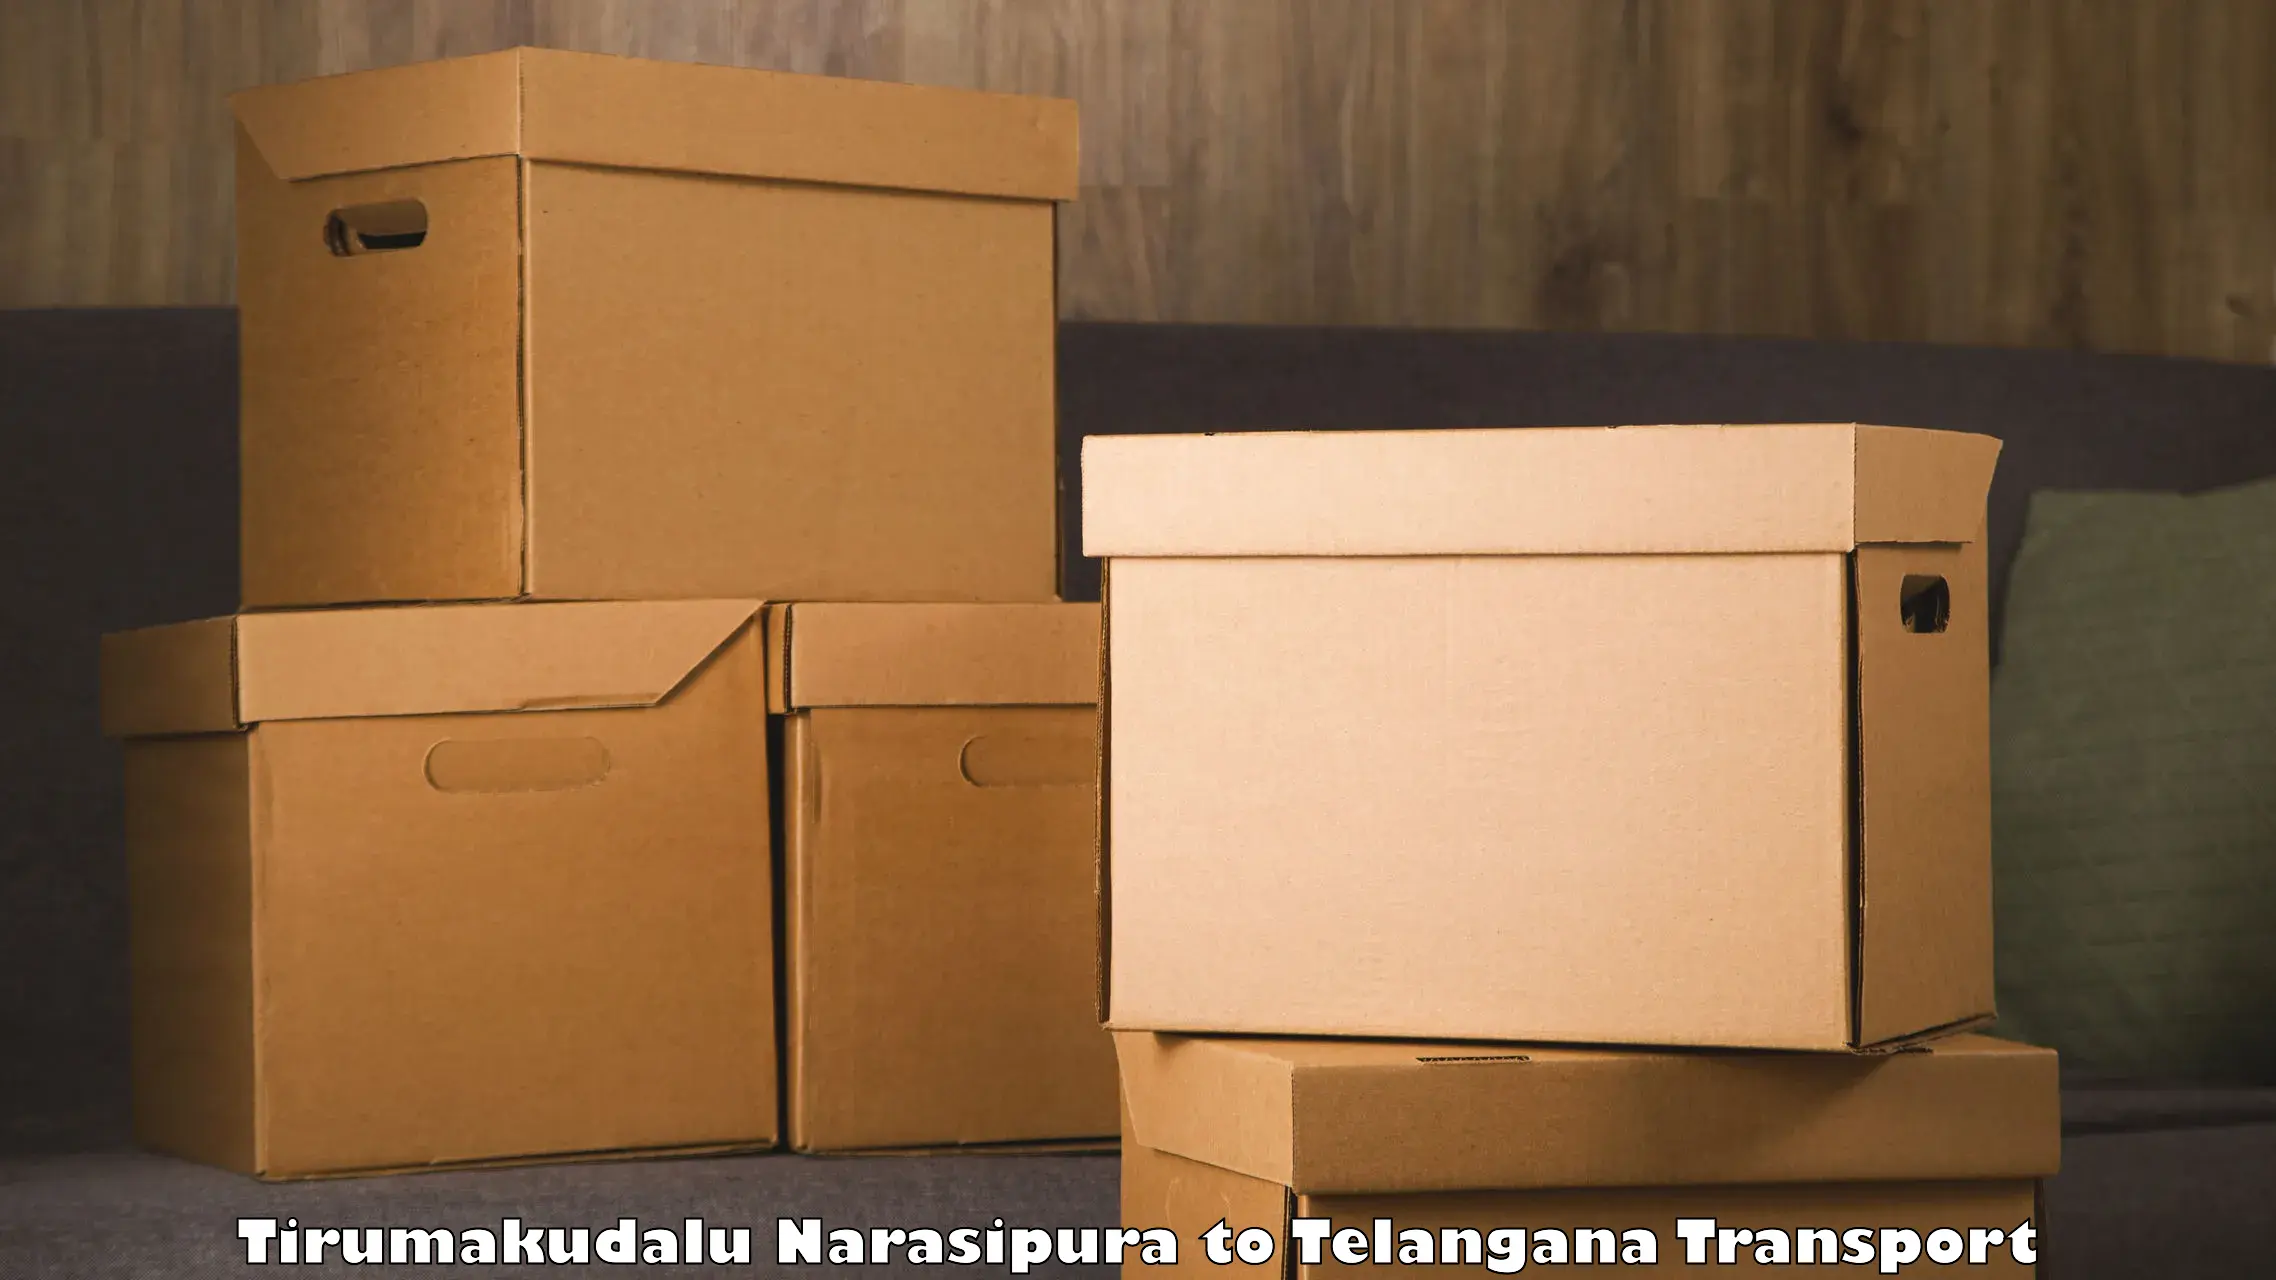 Container transport service in Tirumakudalu Narasipura to Odela